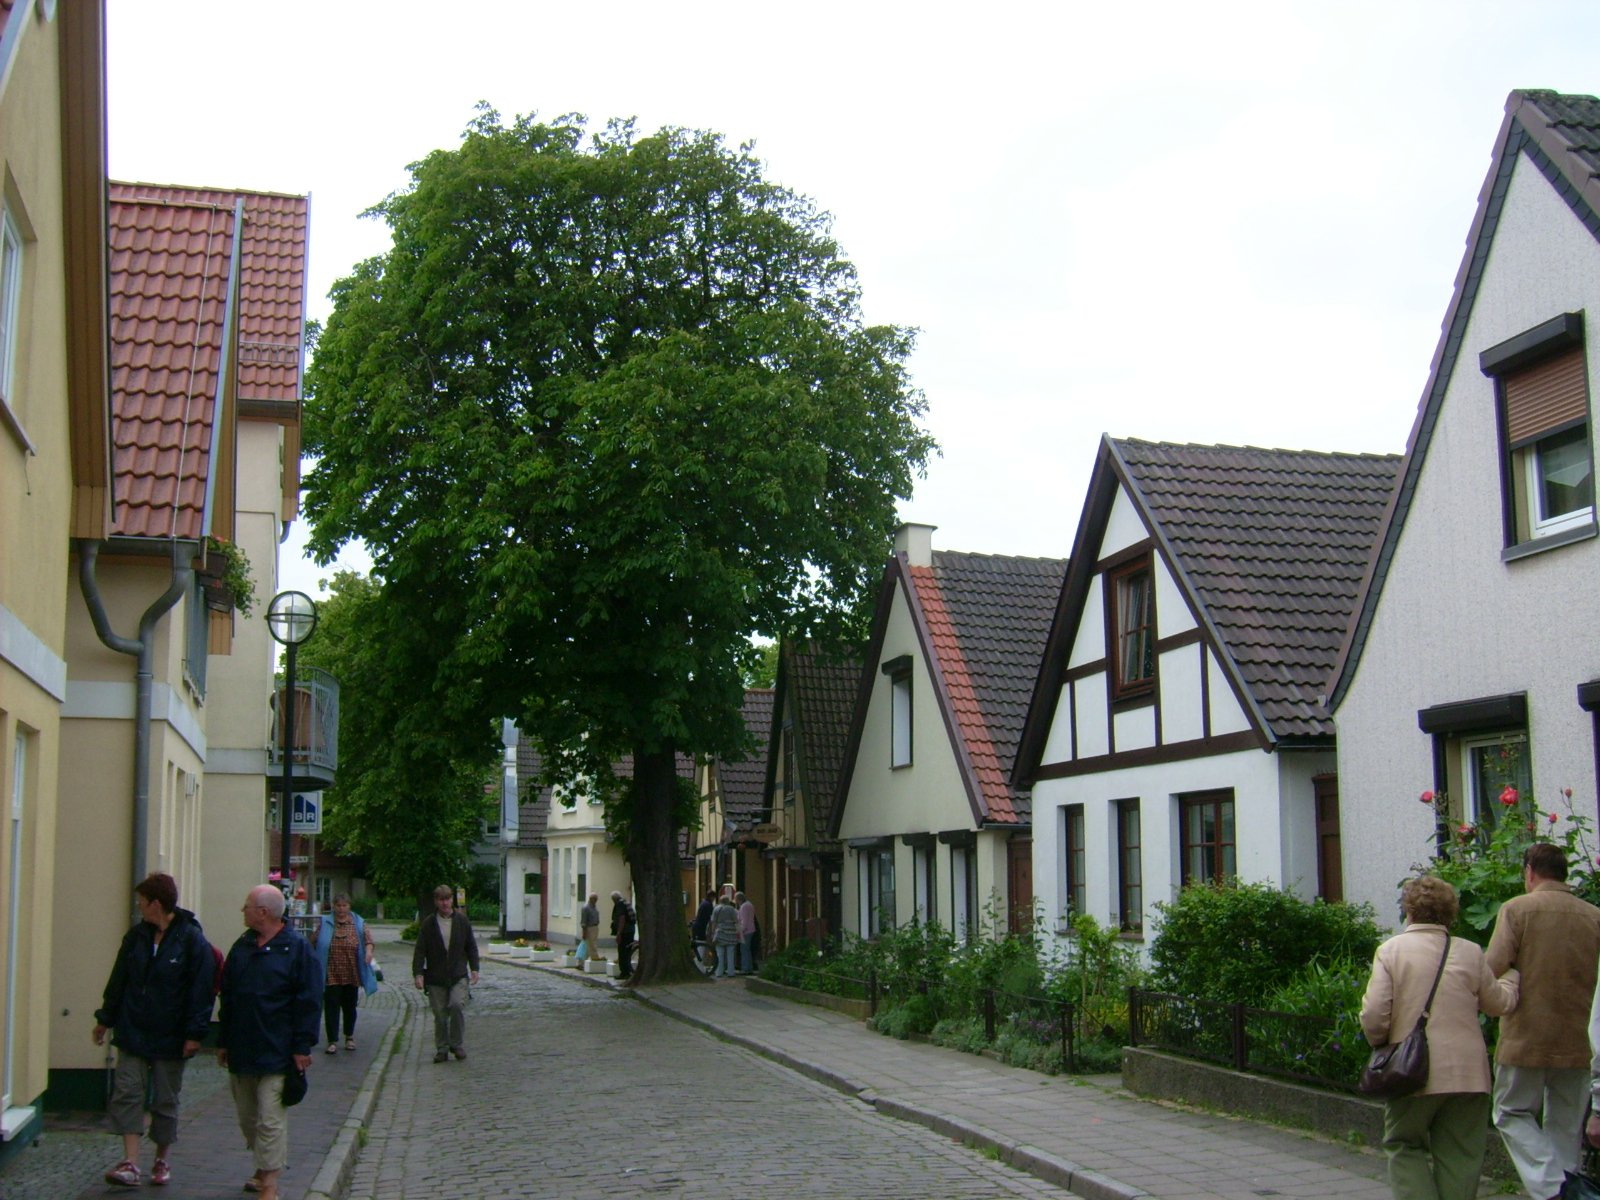 Farbfoto: Eine Straße in Warnemünde im Jahre 2009. Fotograf: Bernd Paepcke.